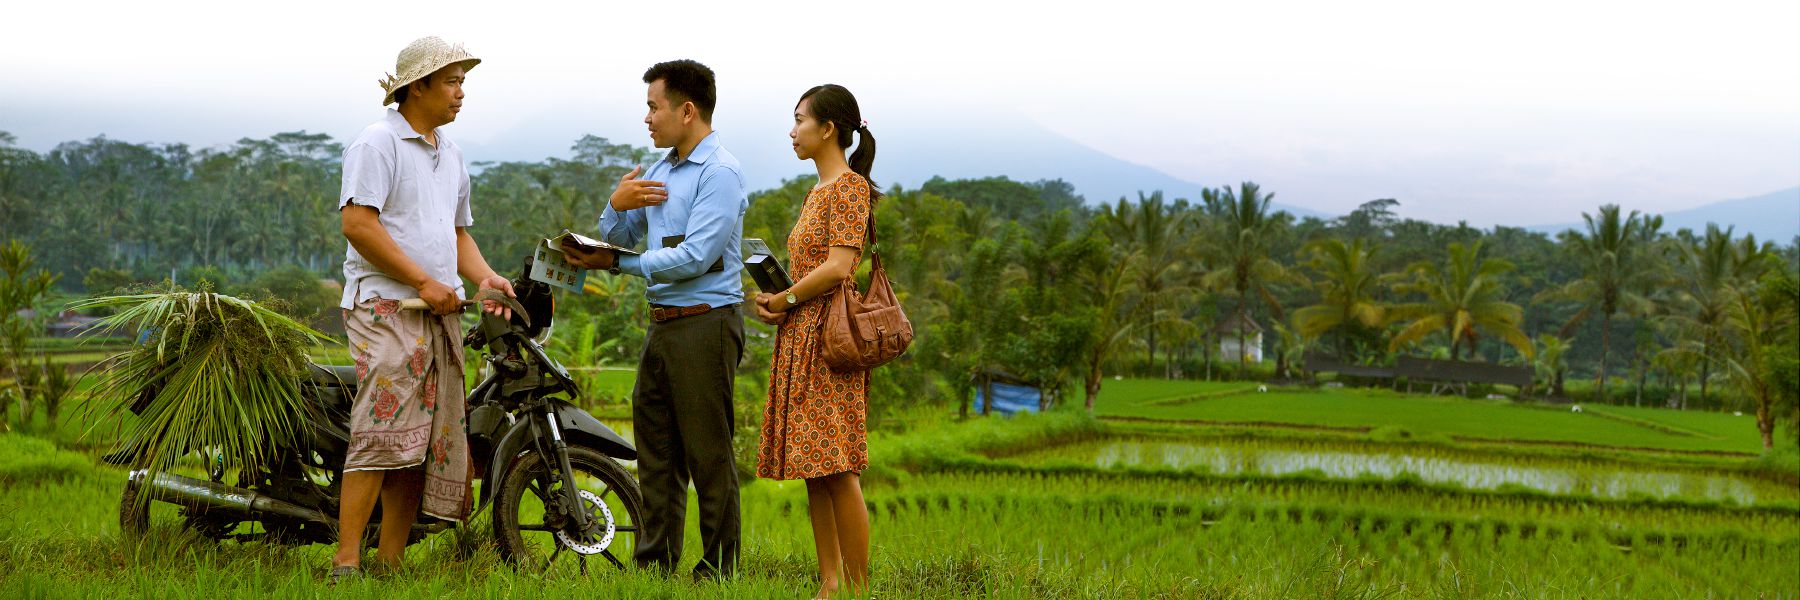 ორი იეჰოვას მოწმე უქადაგებს სასიხარულო ცნობას მამაკაცს ბრინჯის მინდორში